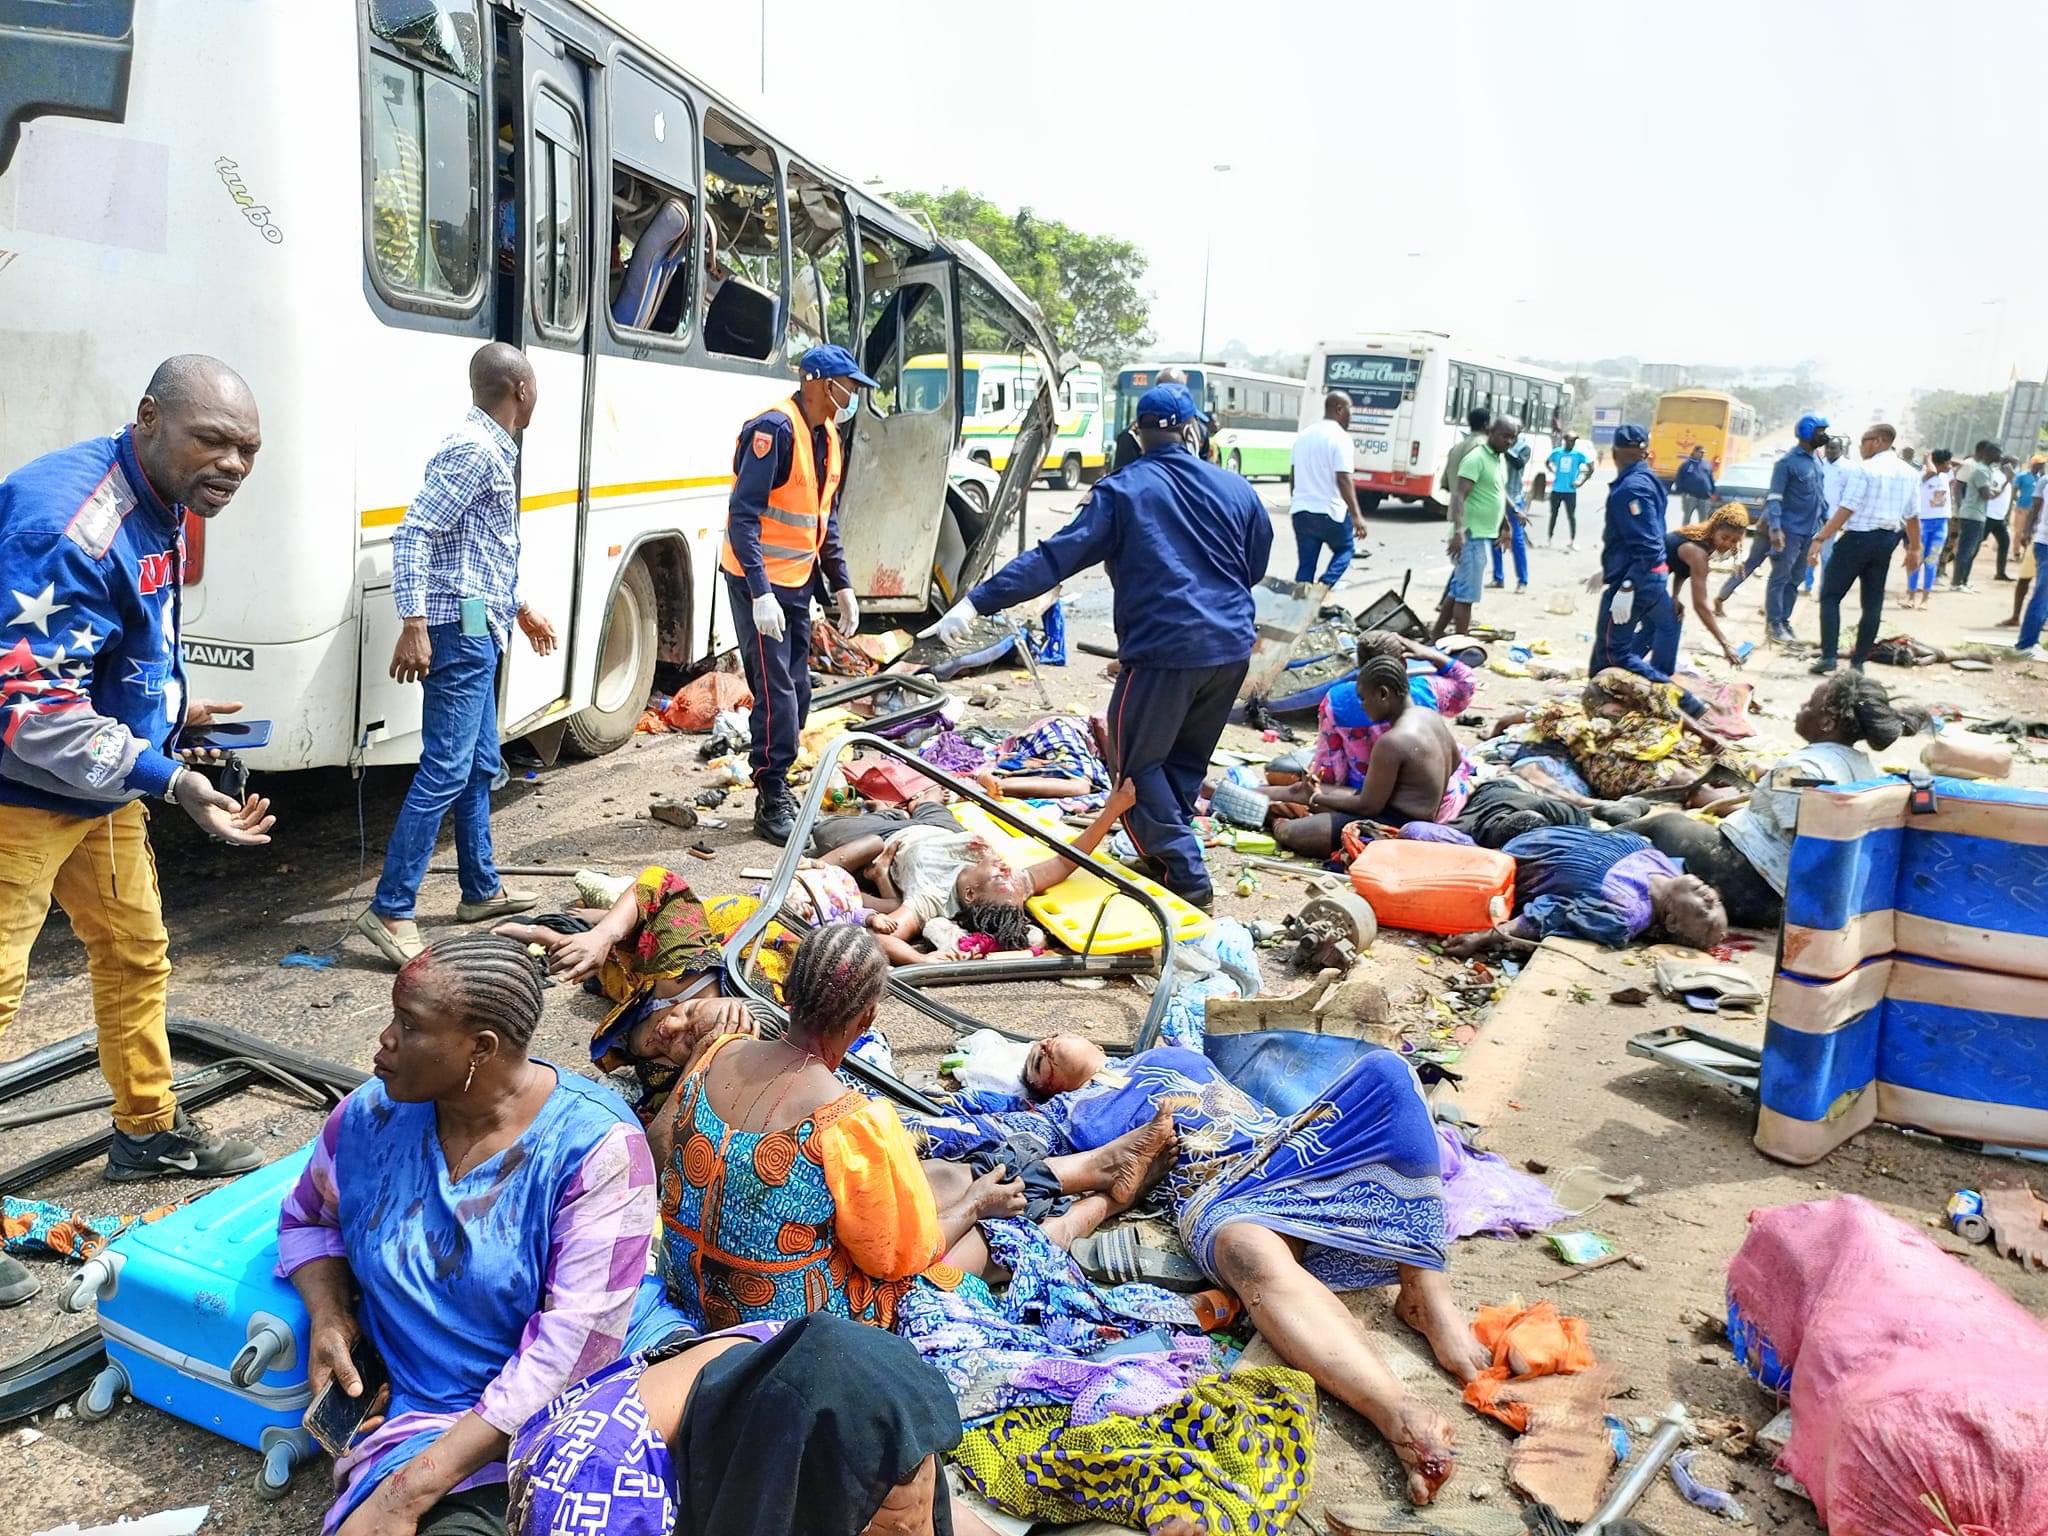 Accident de la circulation ce jeudi 05 Janvier 2022 à la sortie de Yamoussoukro. Deux bus sont entrés en collision, faisant de nombreux victimes.